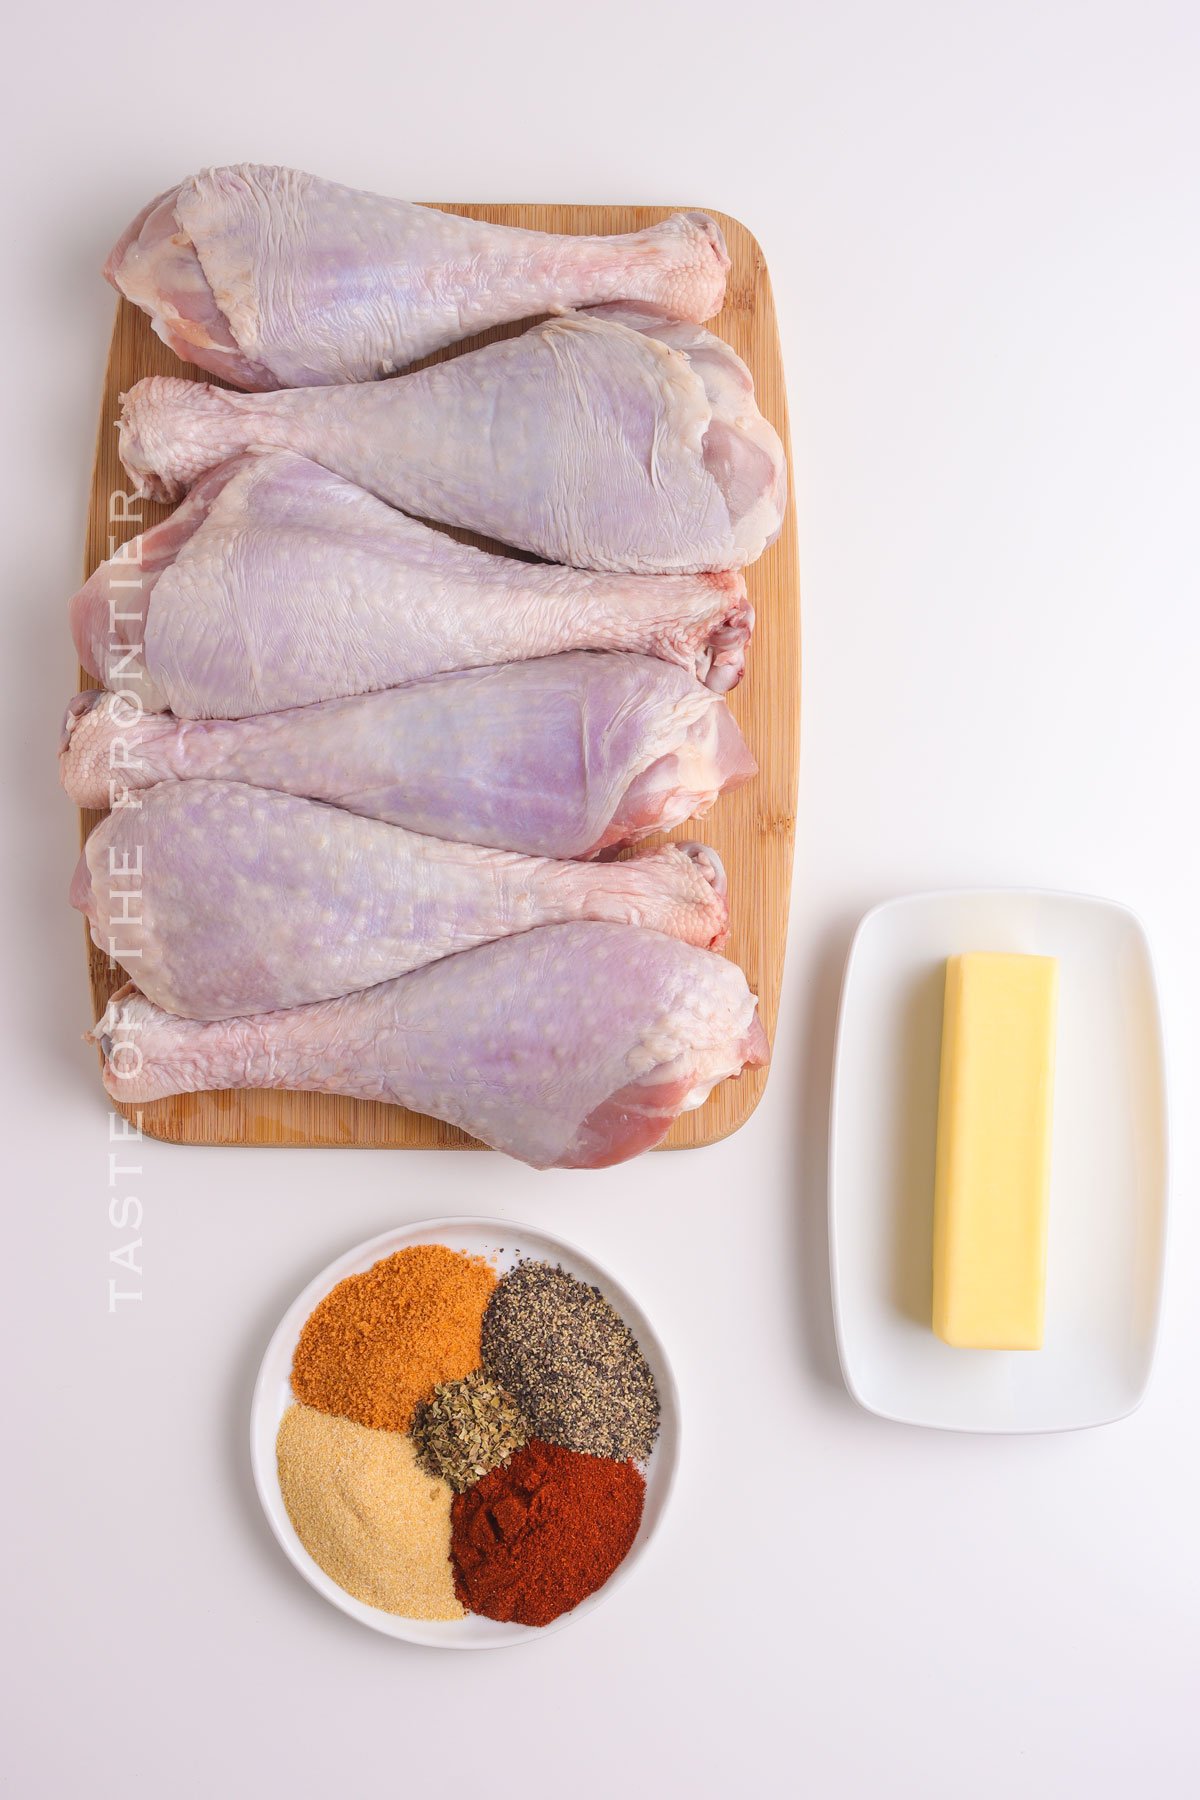 Grilled Turkey Leg ingredients